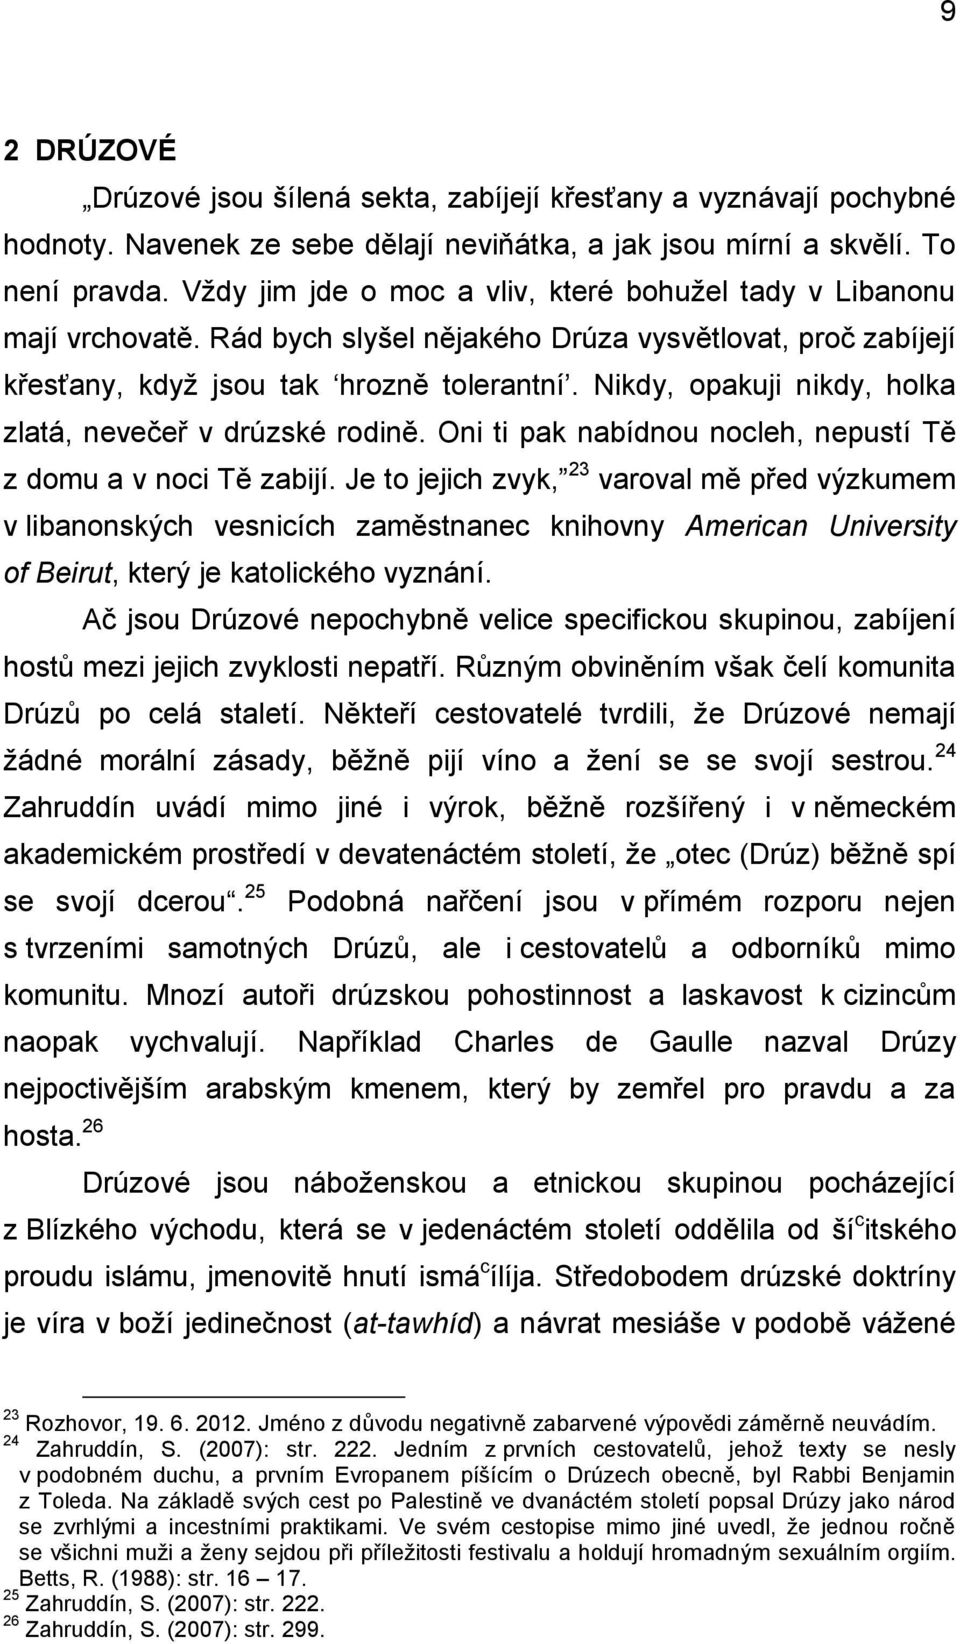 Západočeská univerzita v Plzni Fakulta filozofická Diplomová práce ...